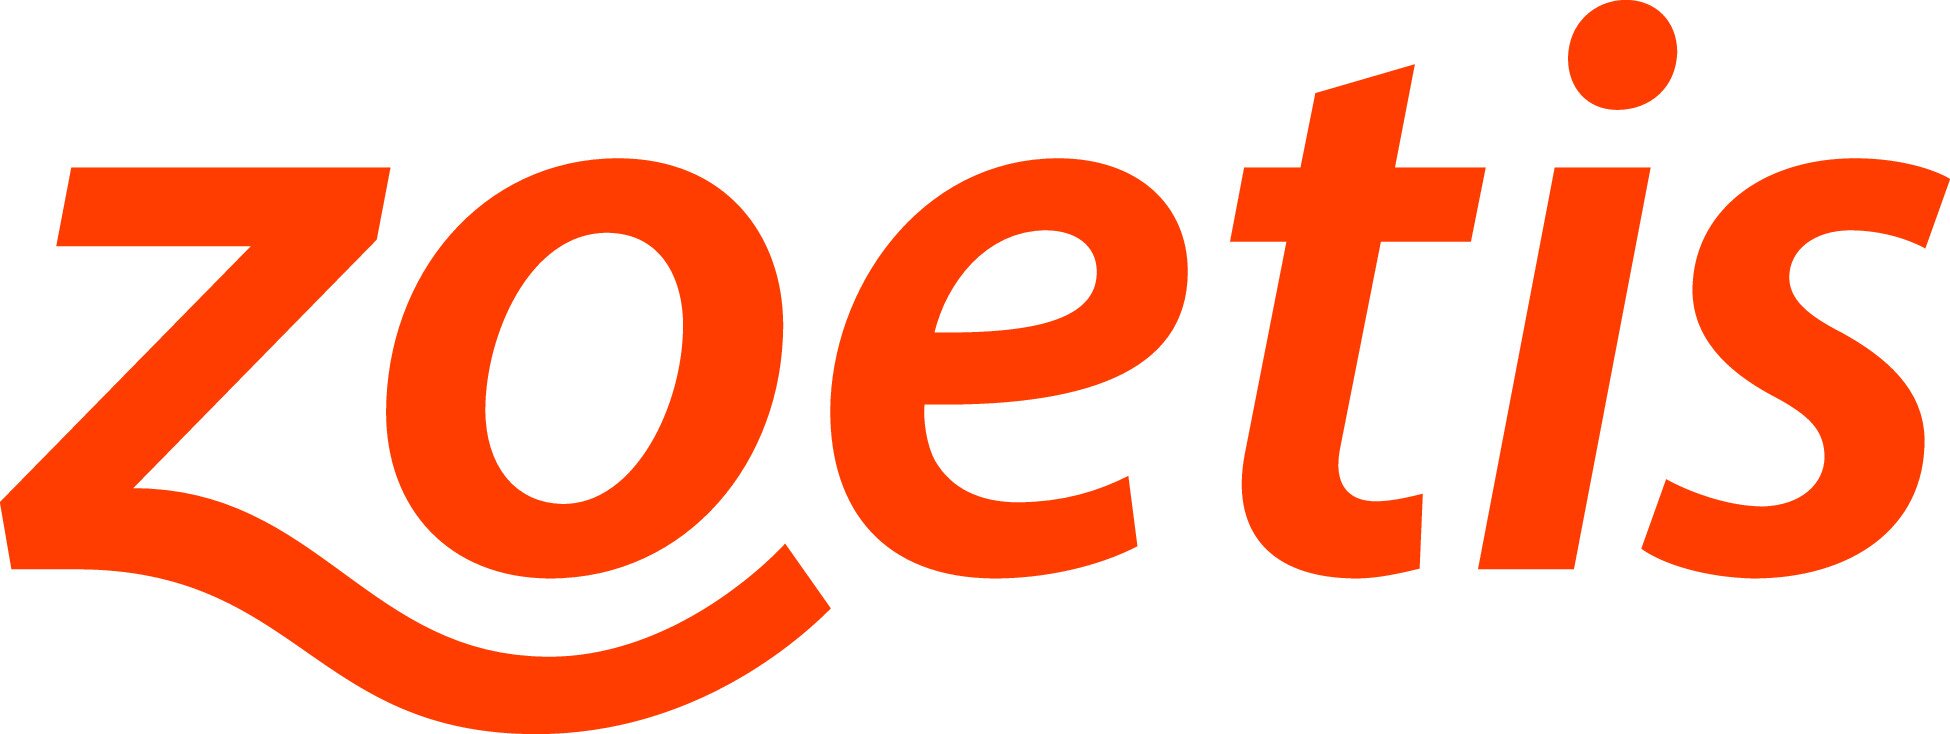 zoetis-logo-orange-CMYK (1).jpg